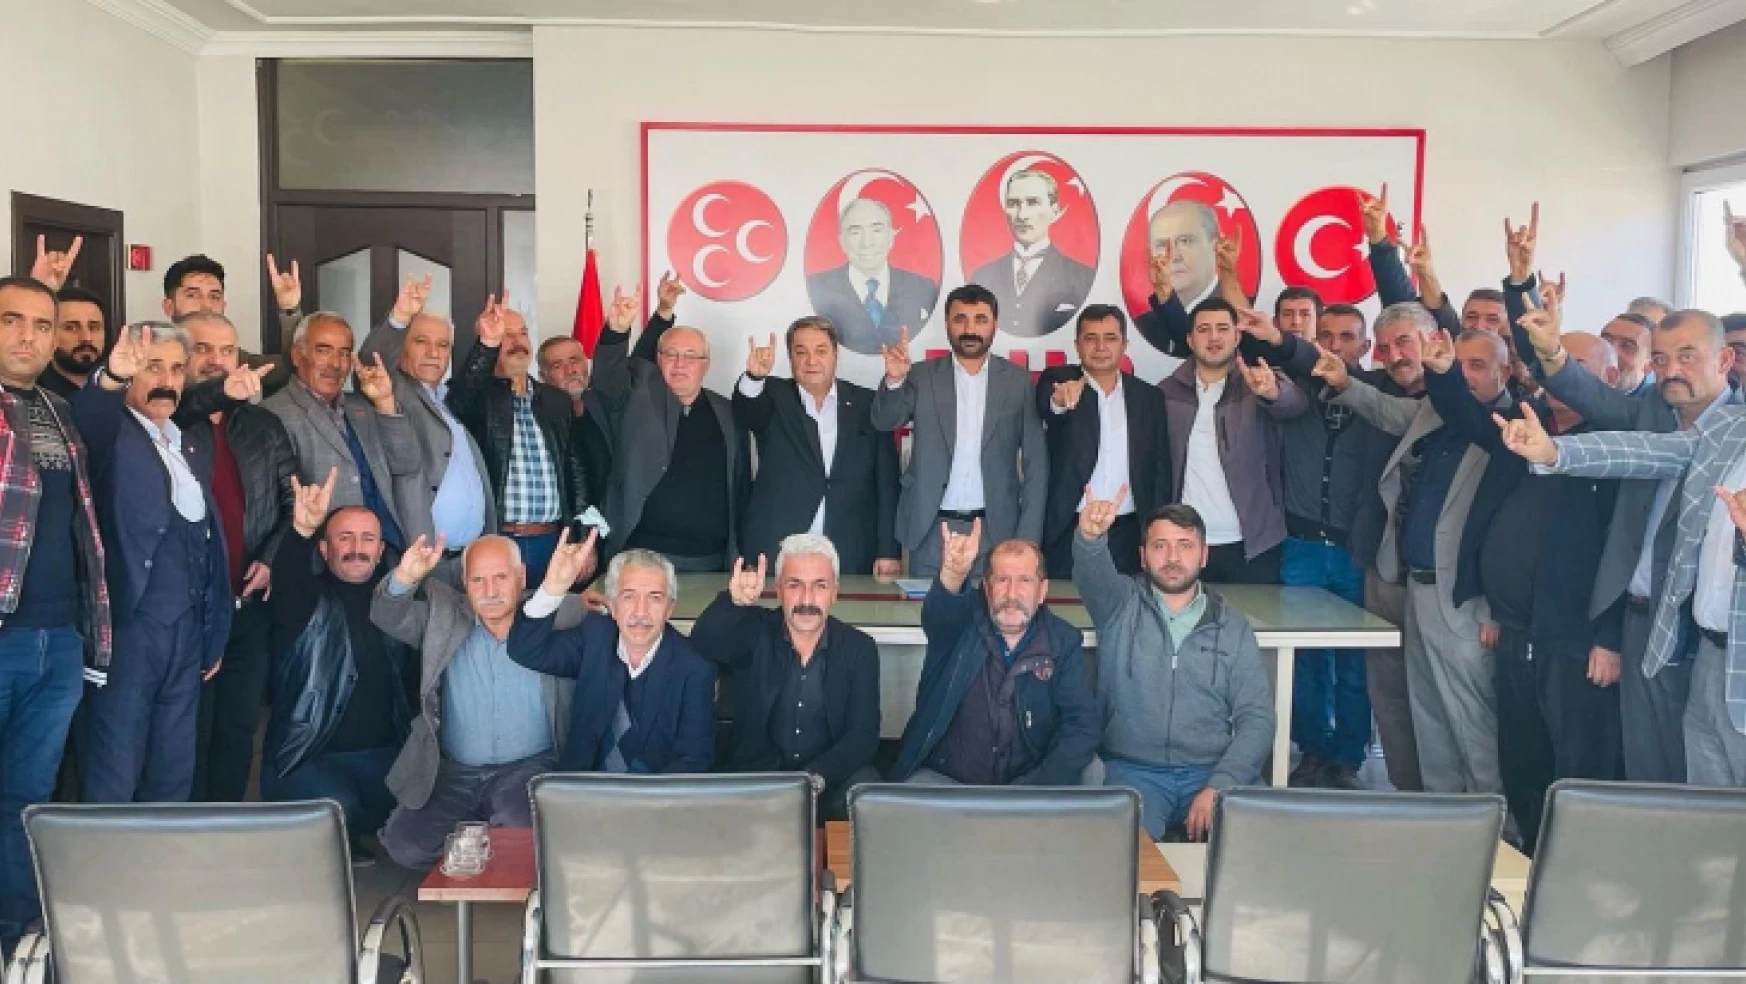 Milliyetçi Hareket Partisi Malatya İl Teşkilatı Seçim Çalışmalarına Hız Verdi